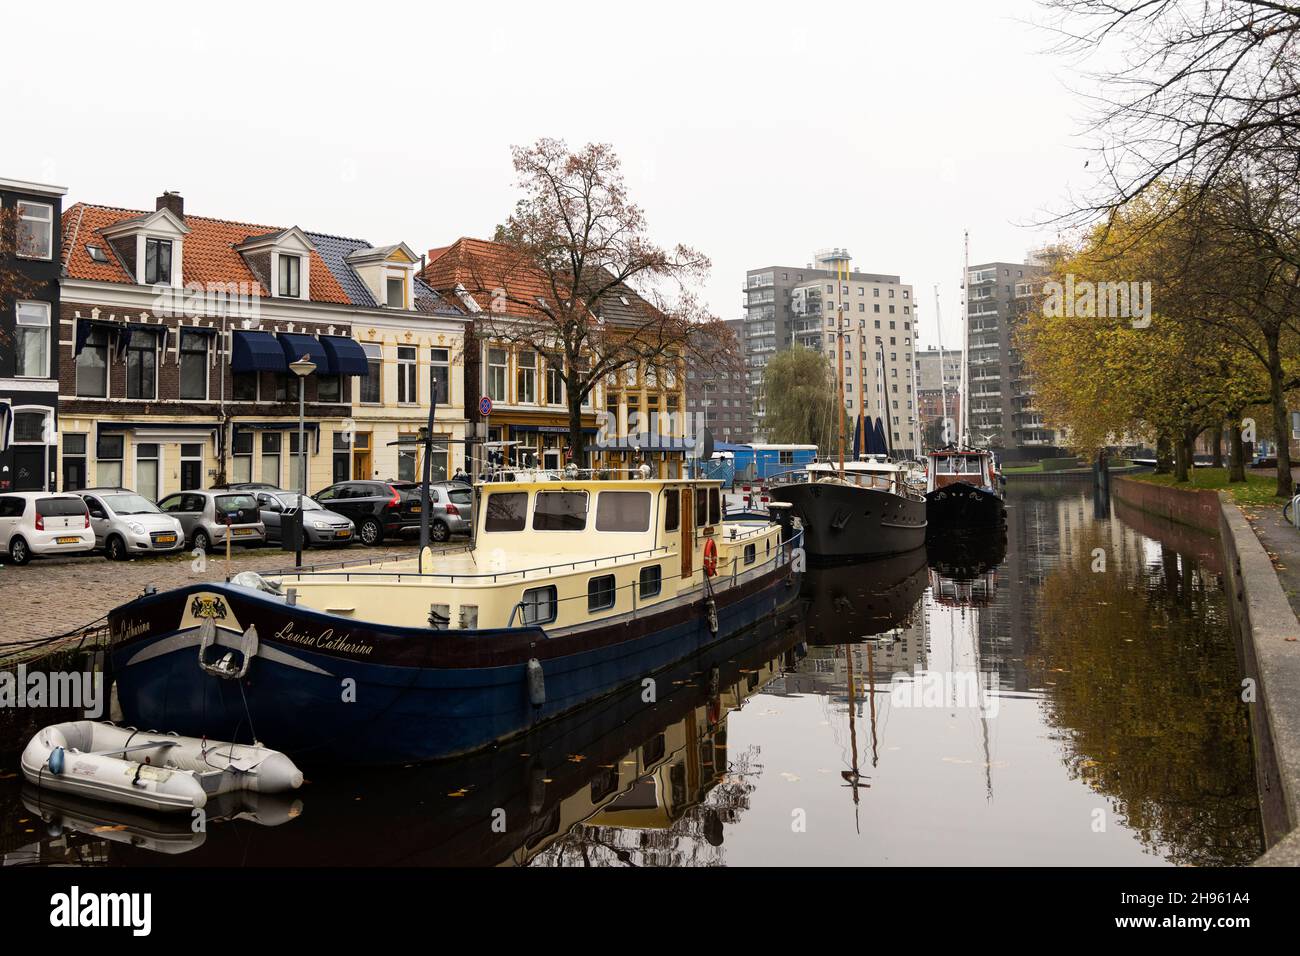 Looking across the canal toward shops and restaurants on Schuitendiep from Winschoterkade near the Oosterhaven in Groningen, Netherlands. Stock Photo